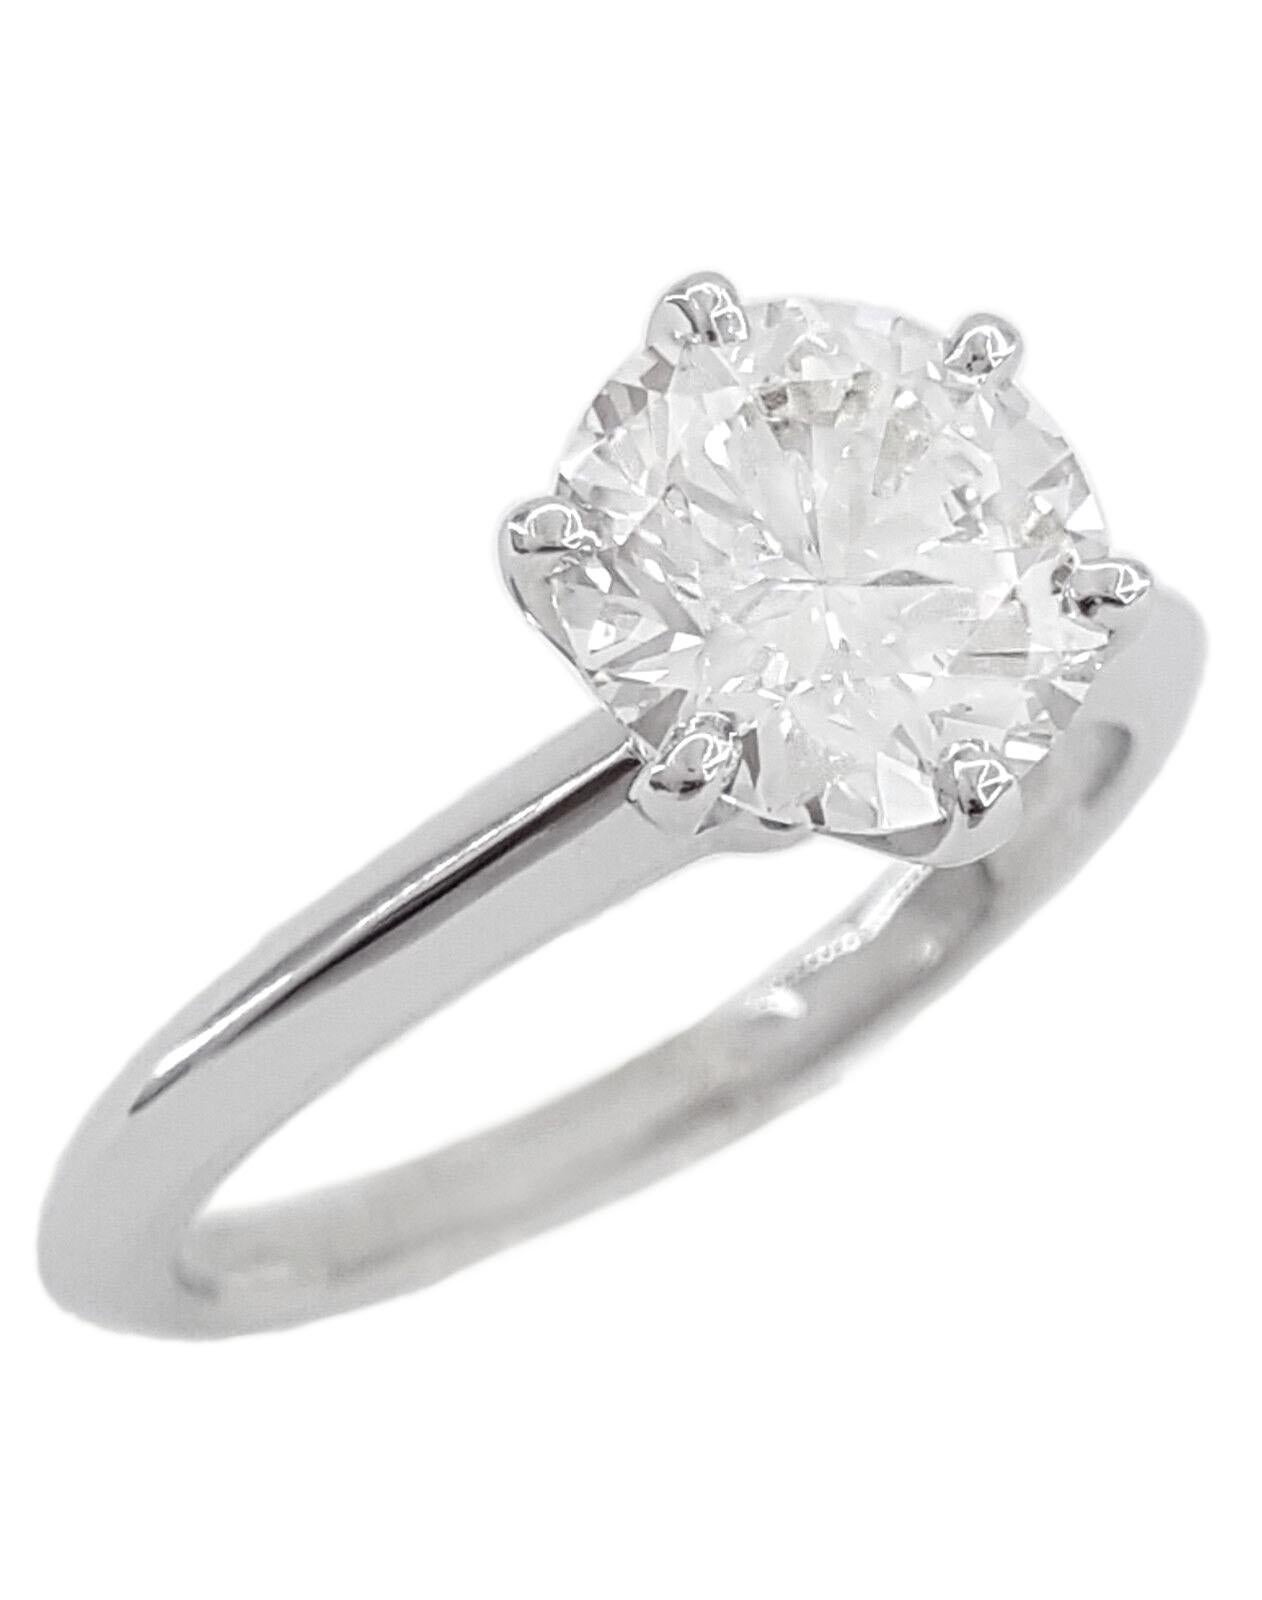 Dieser exquisite Ring zeigt einen GIA-zertifizierten runden Diamanten von 1,5 Karat, der sich anmutig in eine atemberaubende Weißgoldfassung schmiegt. Der vom angesehenen Gemological Institute of America (GIA) bewertete Diamant weist einen